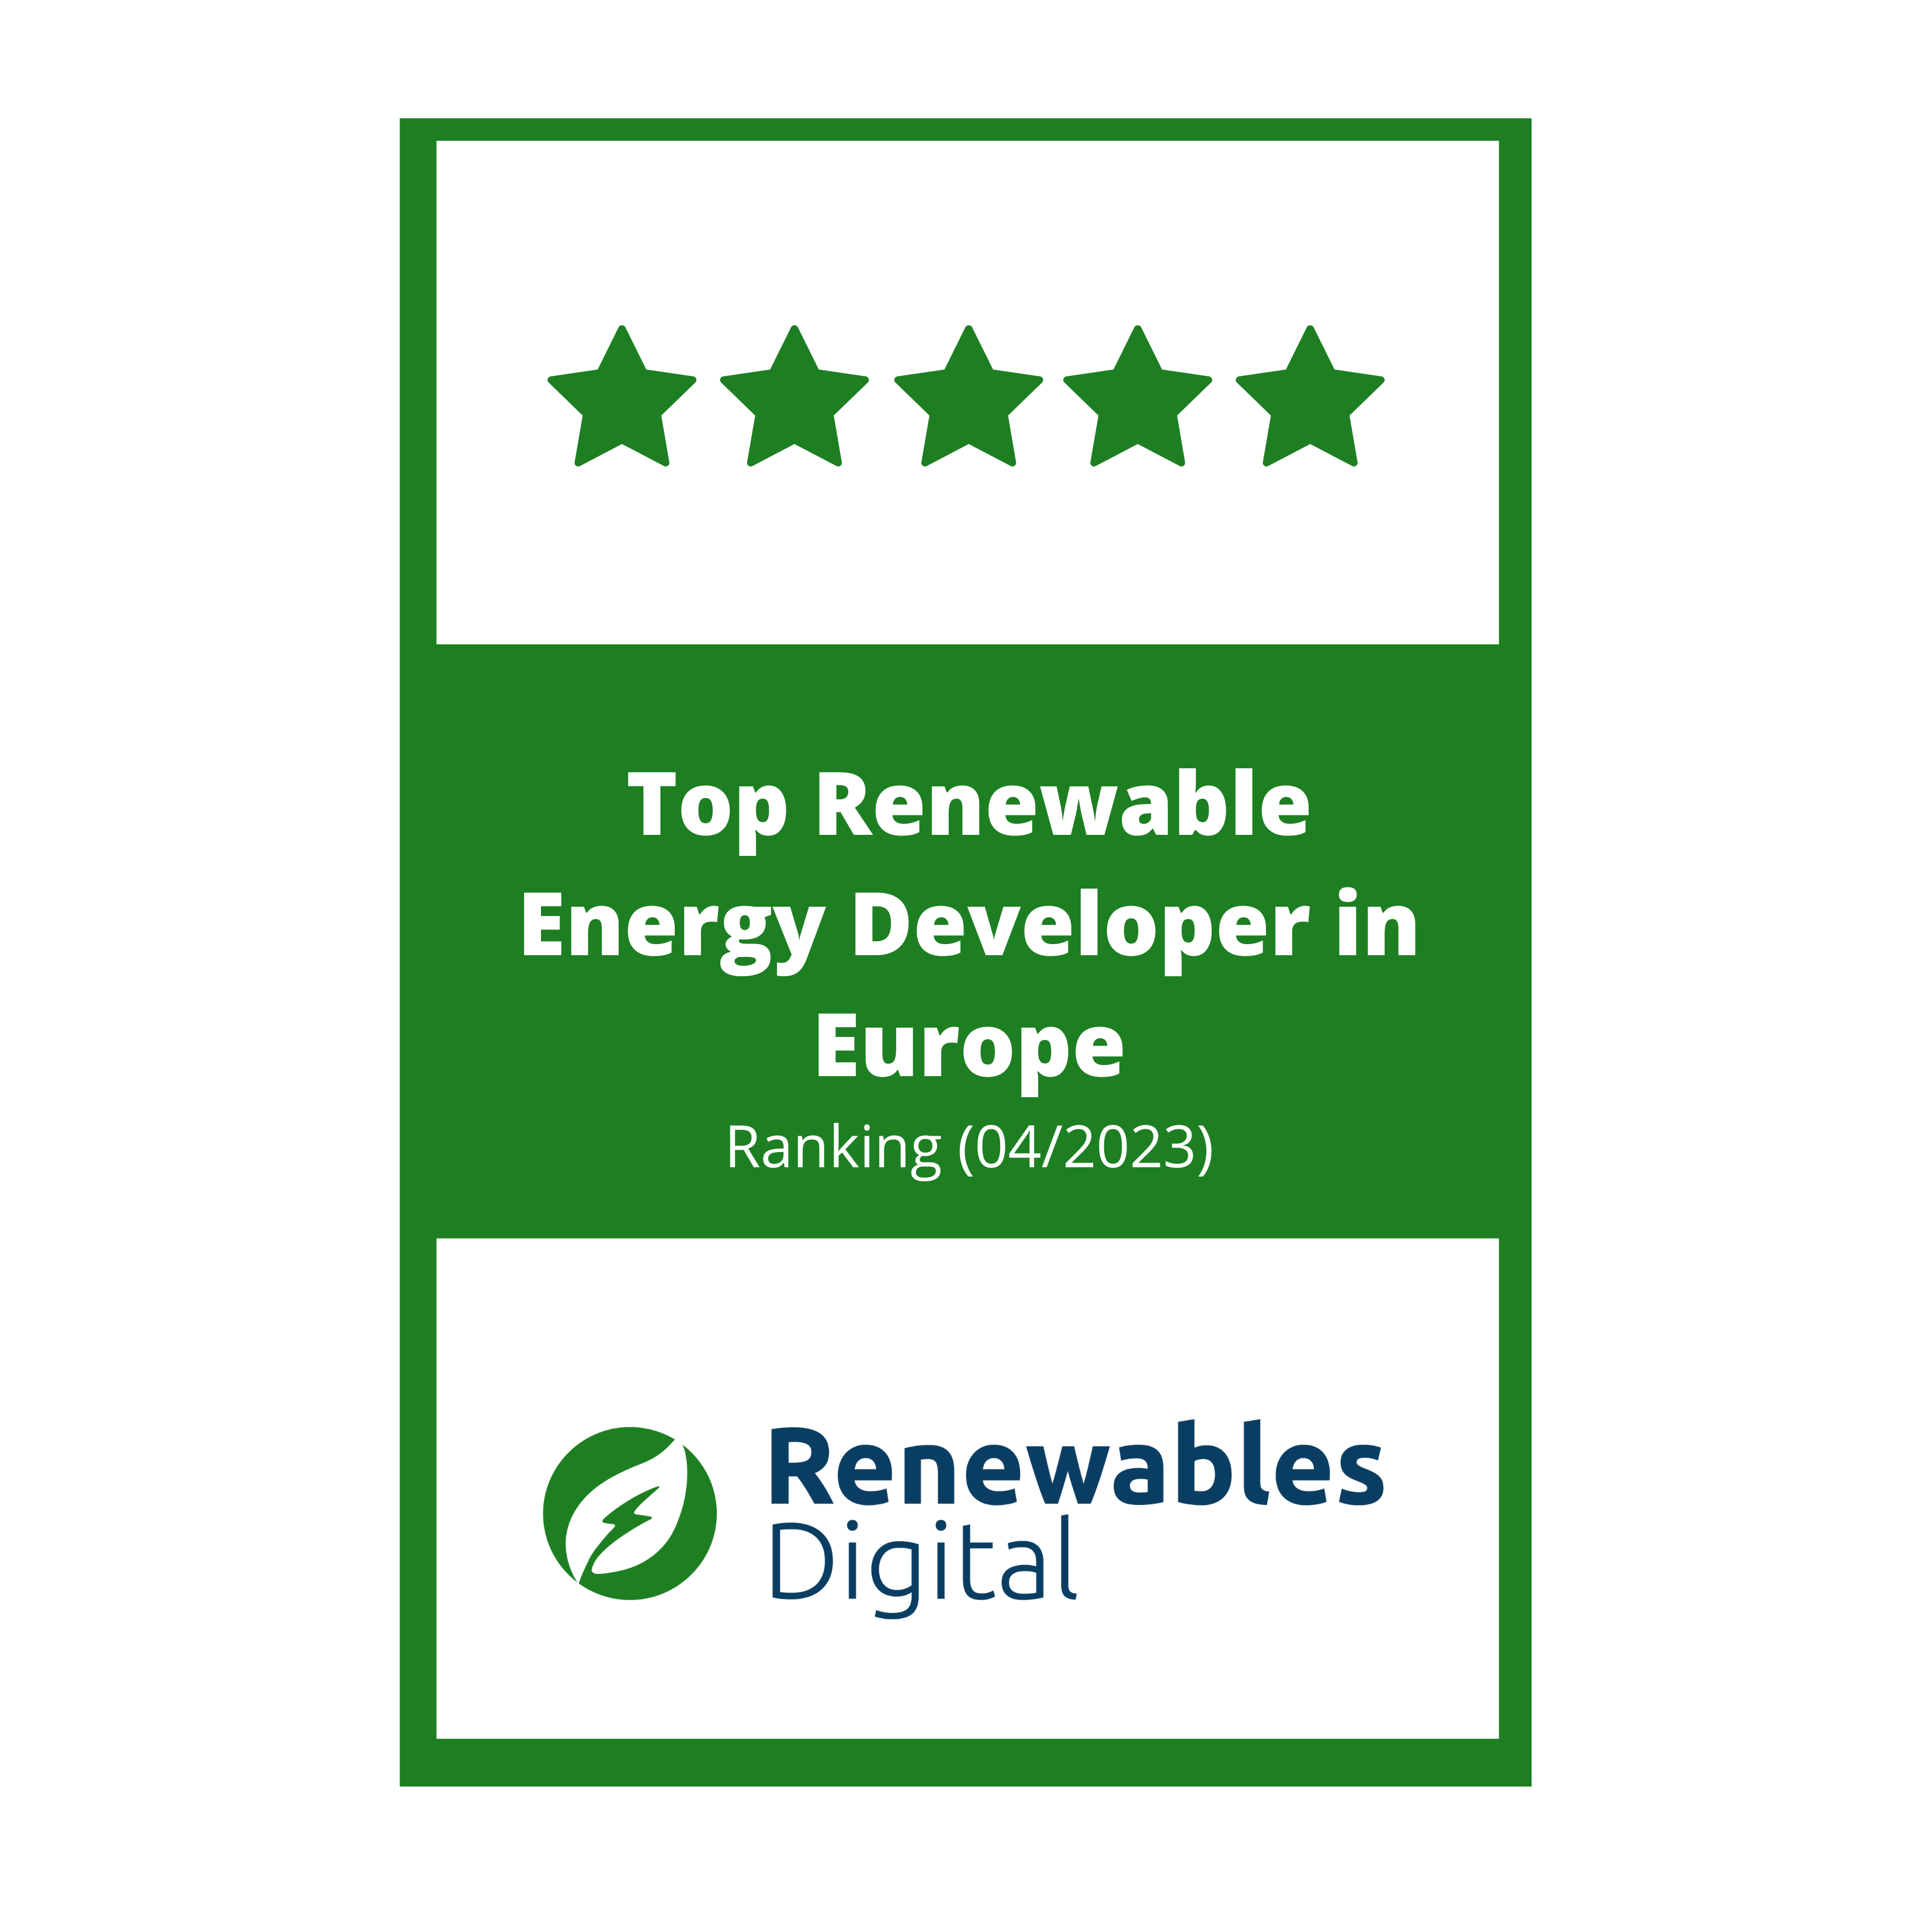 award for european renewable energy developers